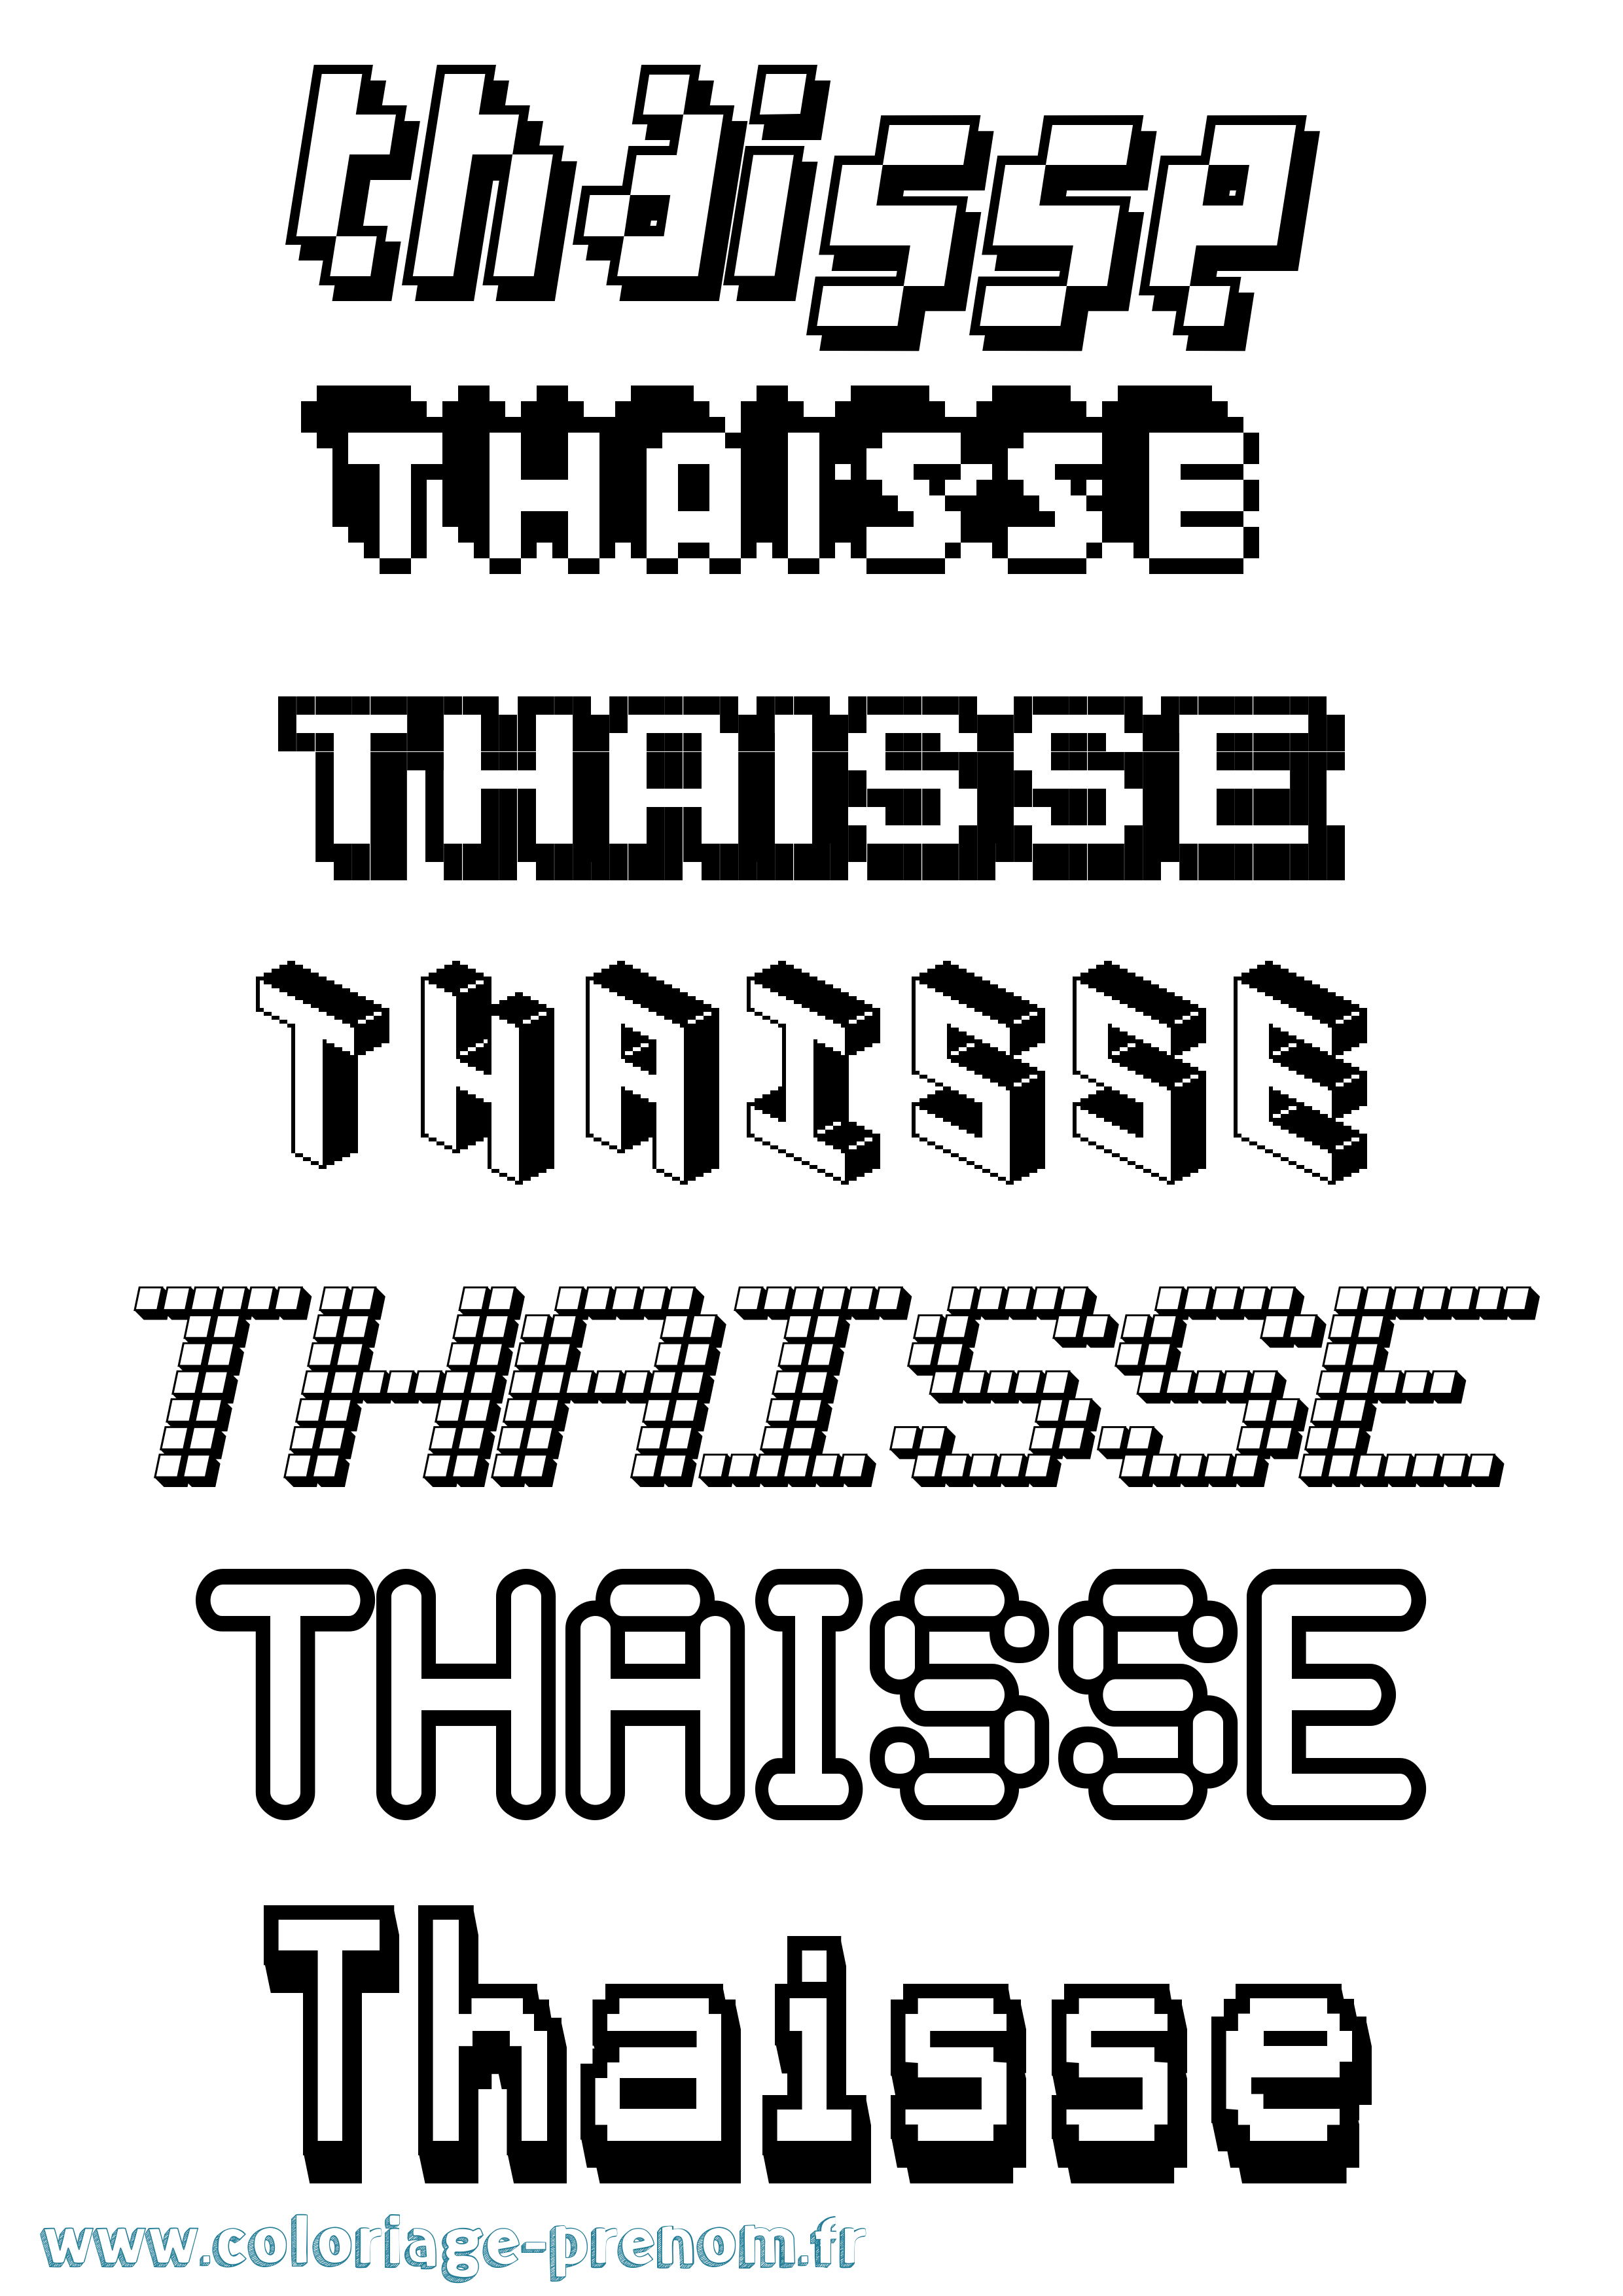 Coloriage prénom Thaisse Pixel